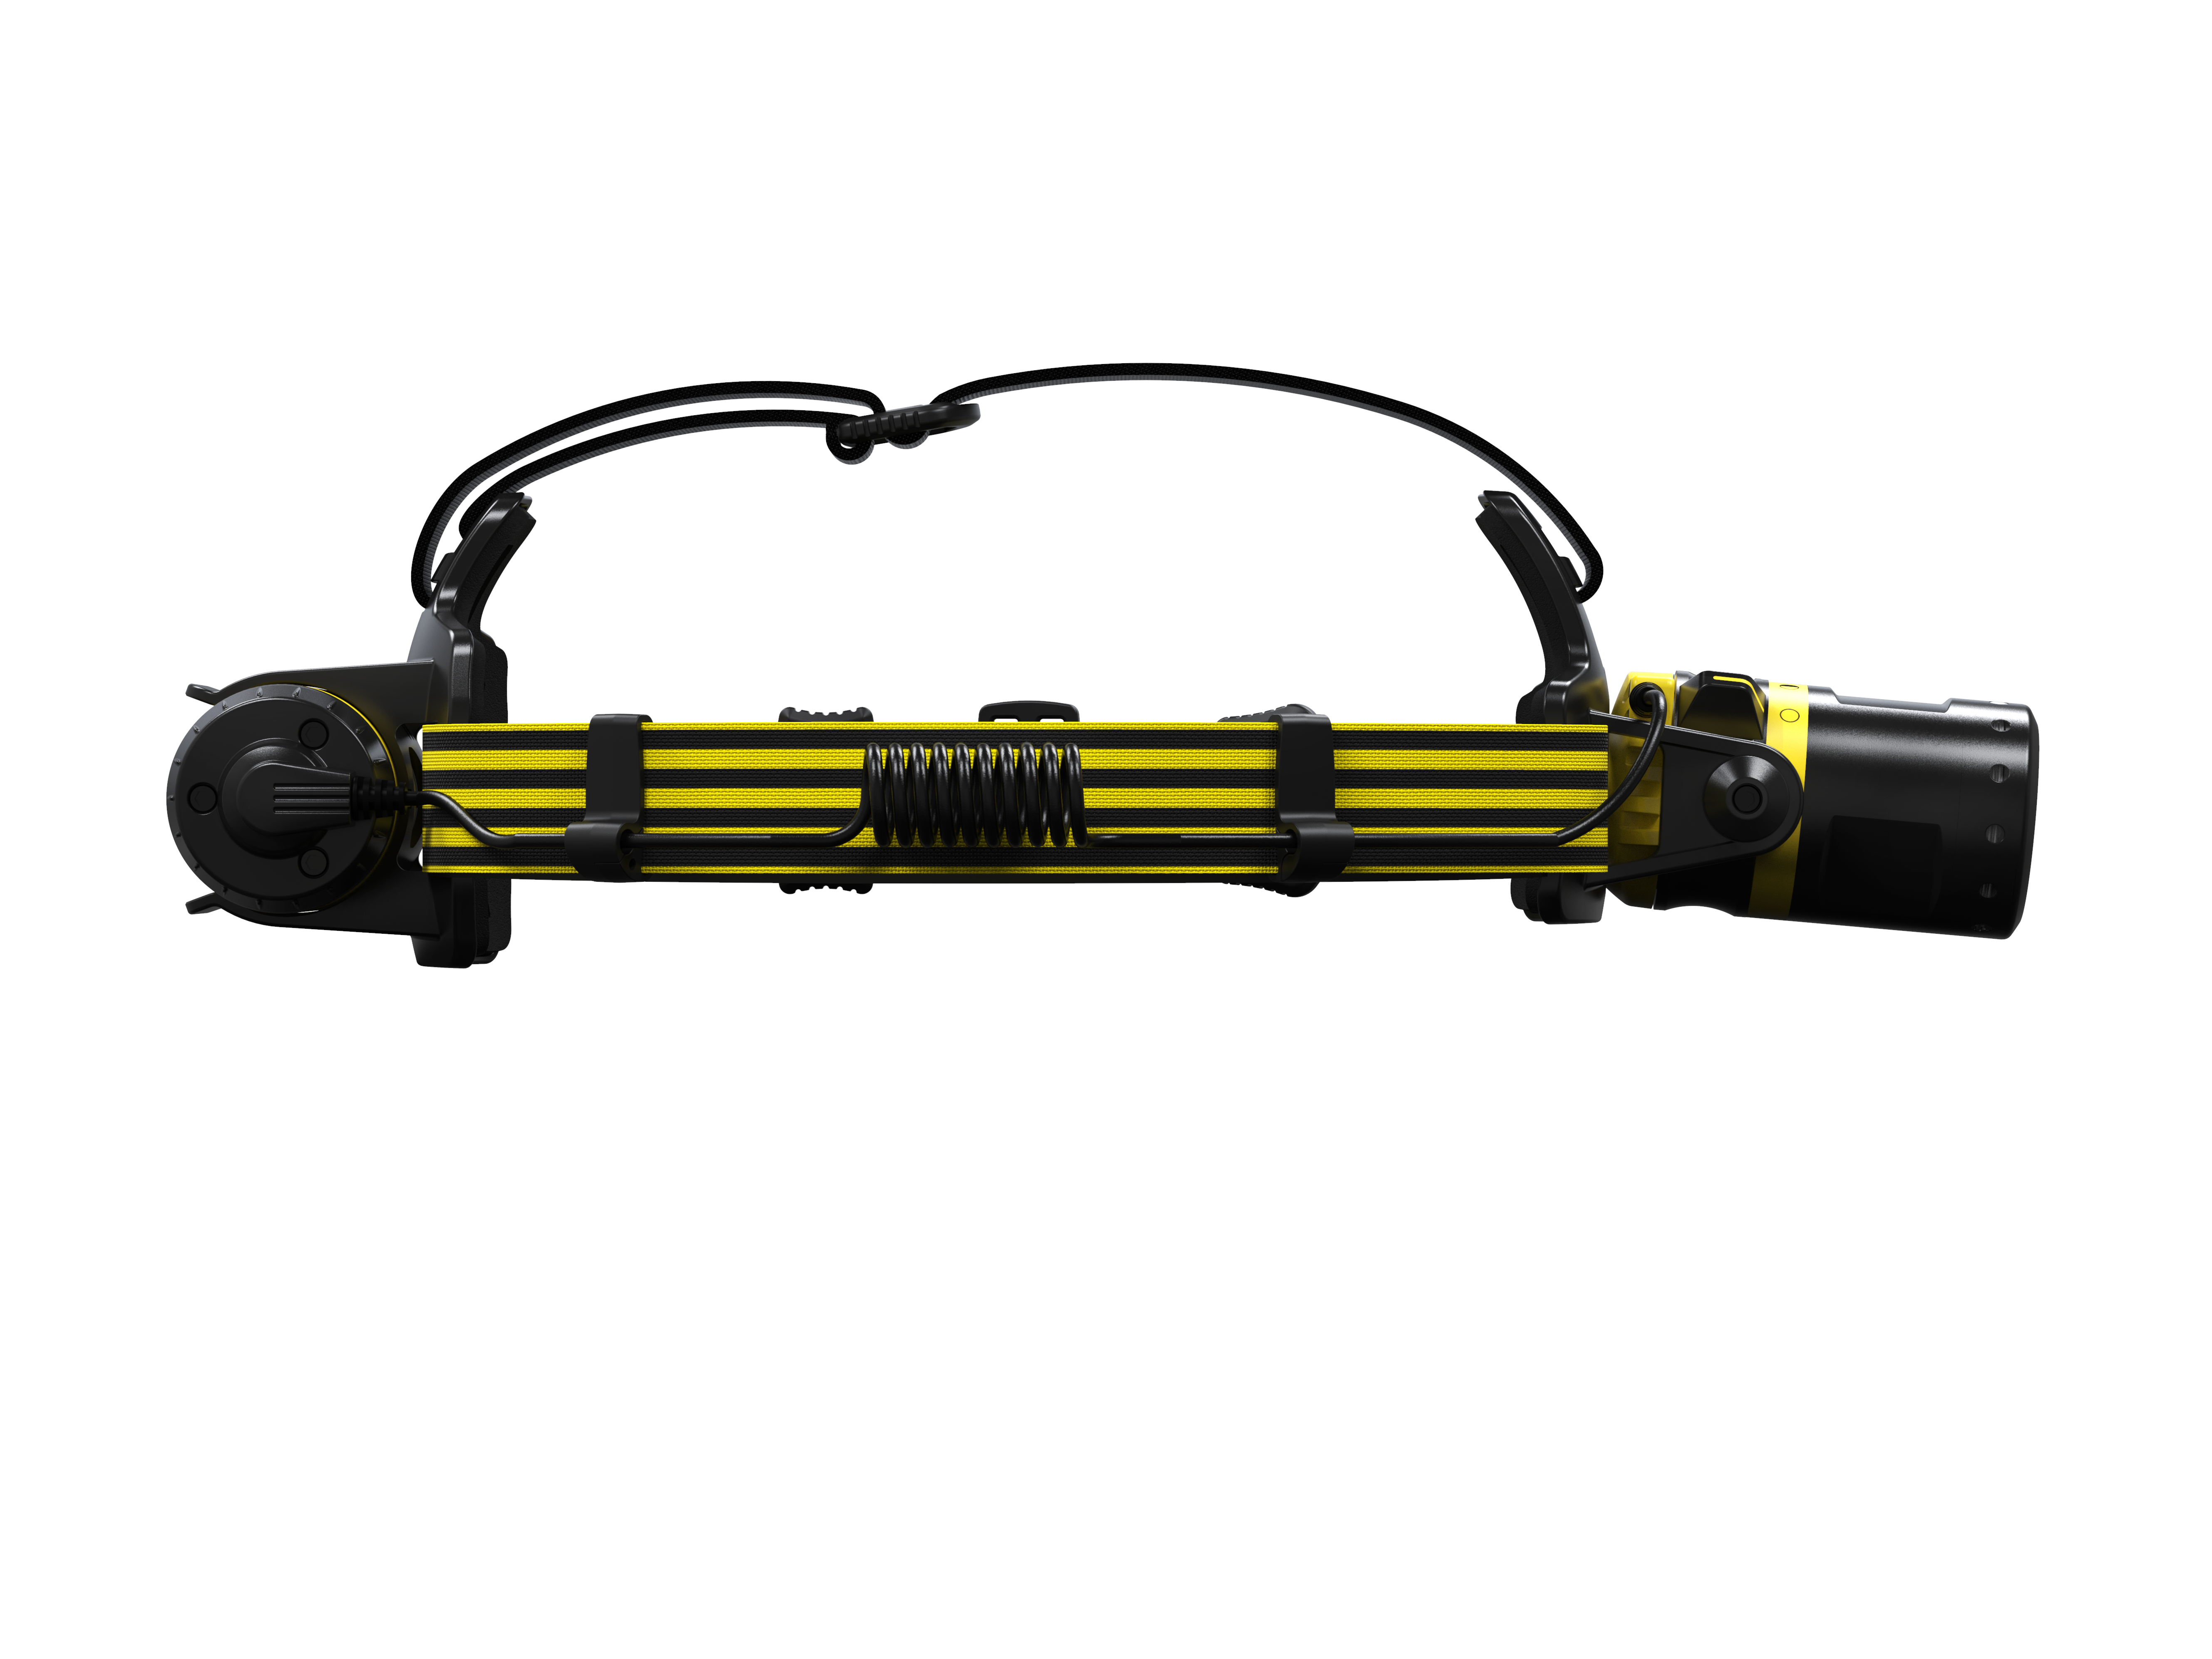 LED Lenser EXH8R - Stirnband-Taschenlampe - Schwarz - Gelb - IP68 - 200 lm - 130 m - 45 h